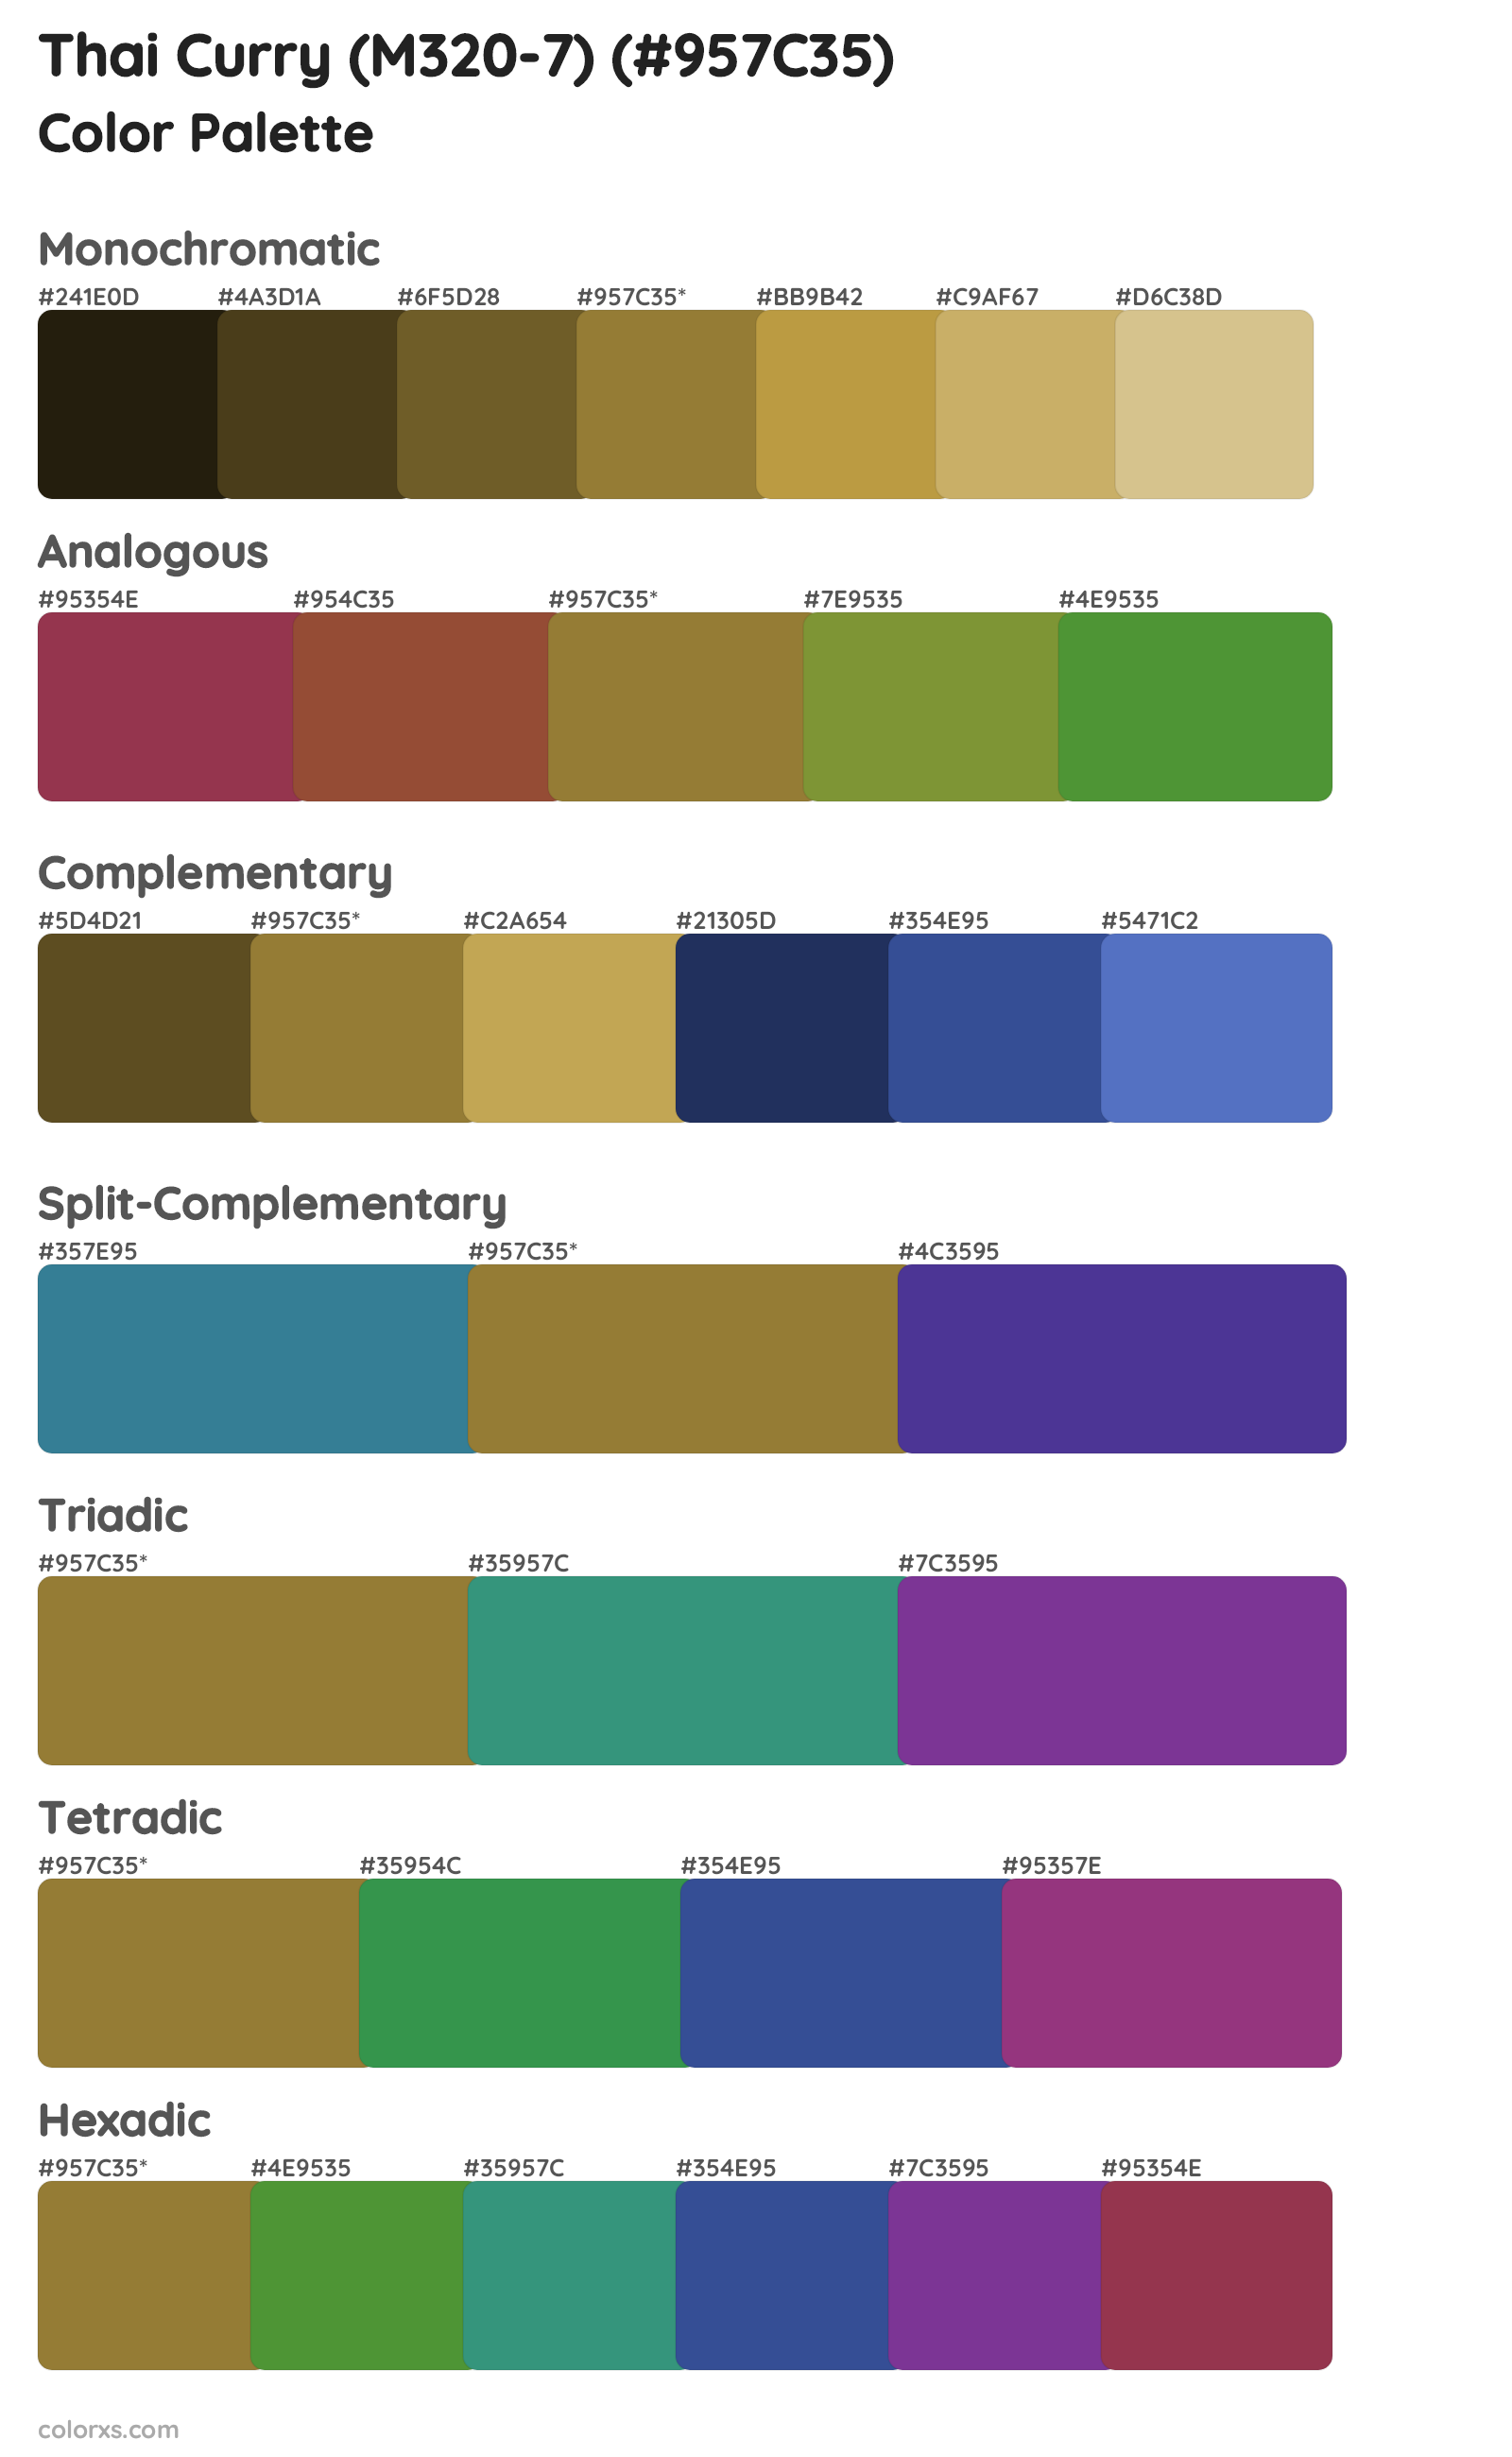 Thai Curry (M320-7) Color Scheme Palettes